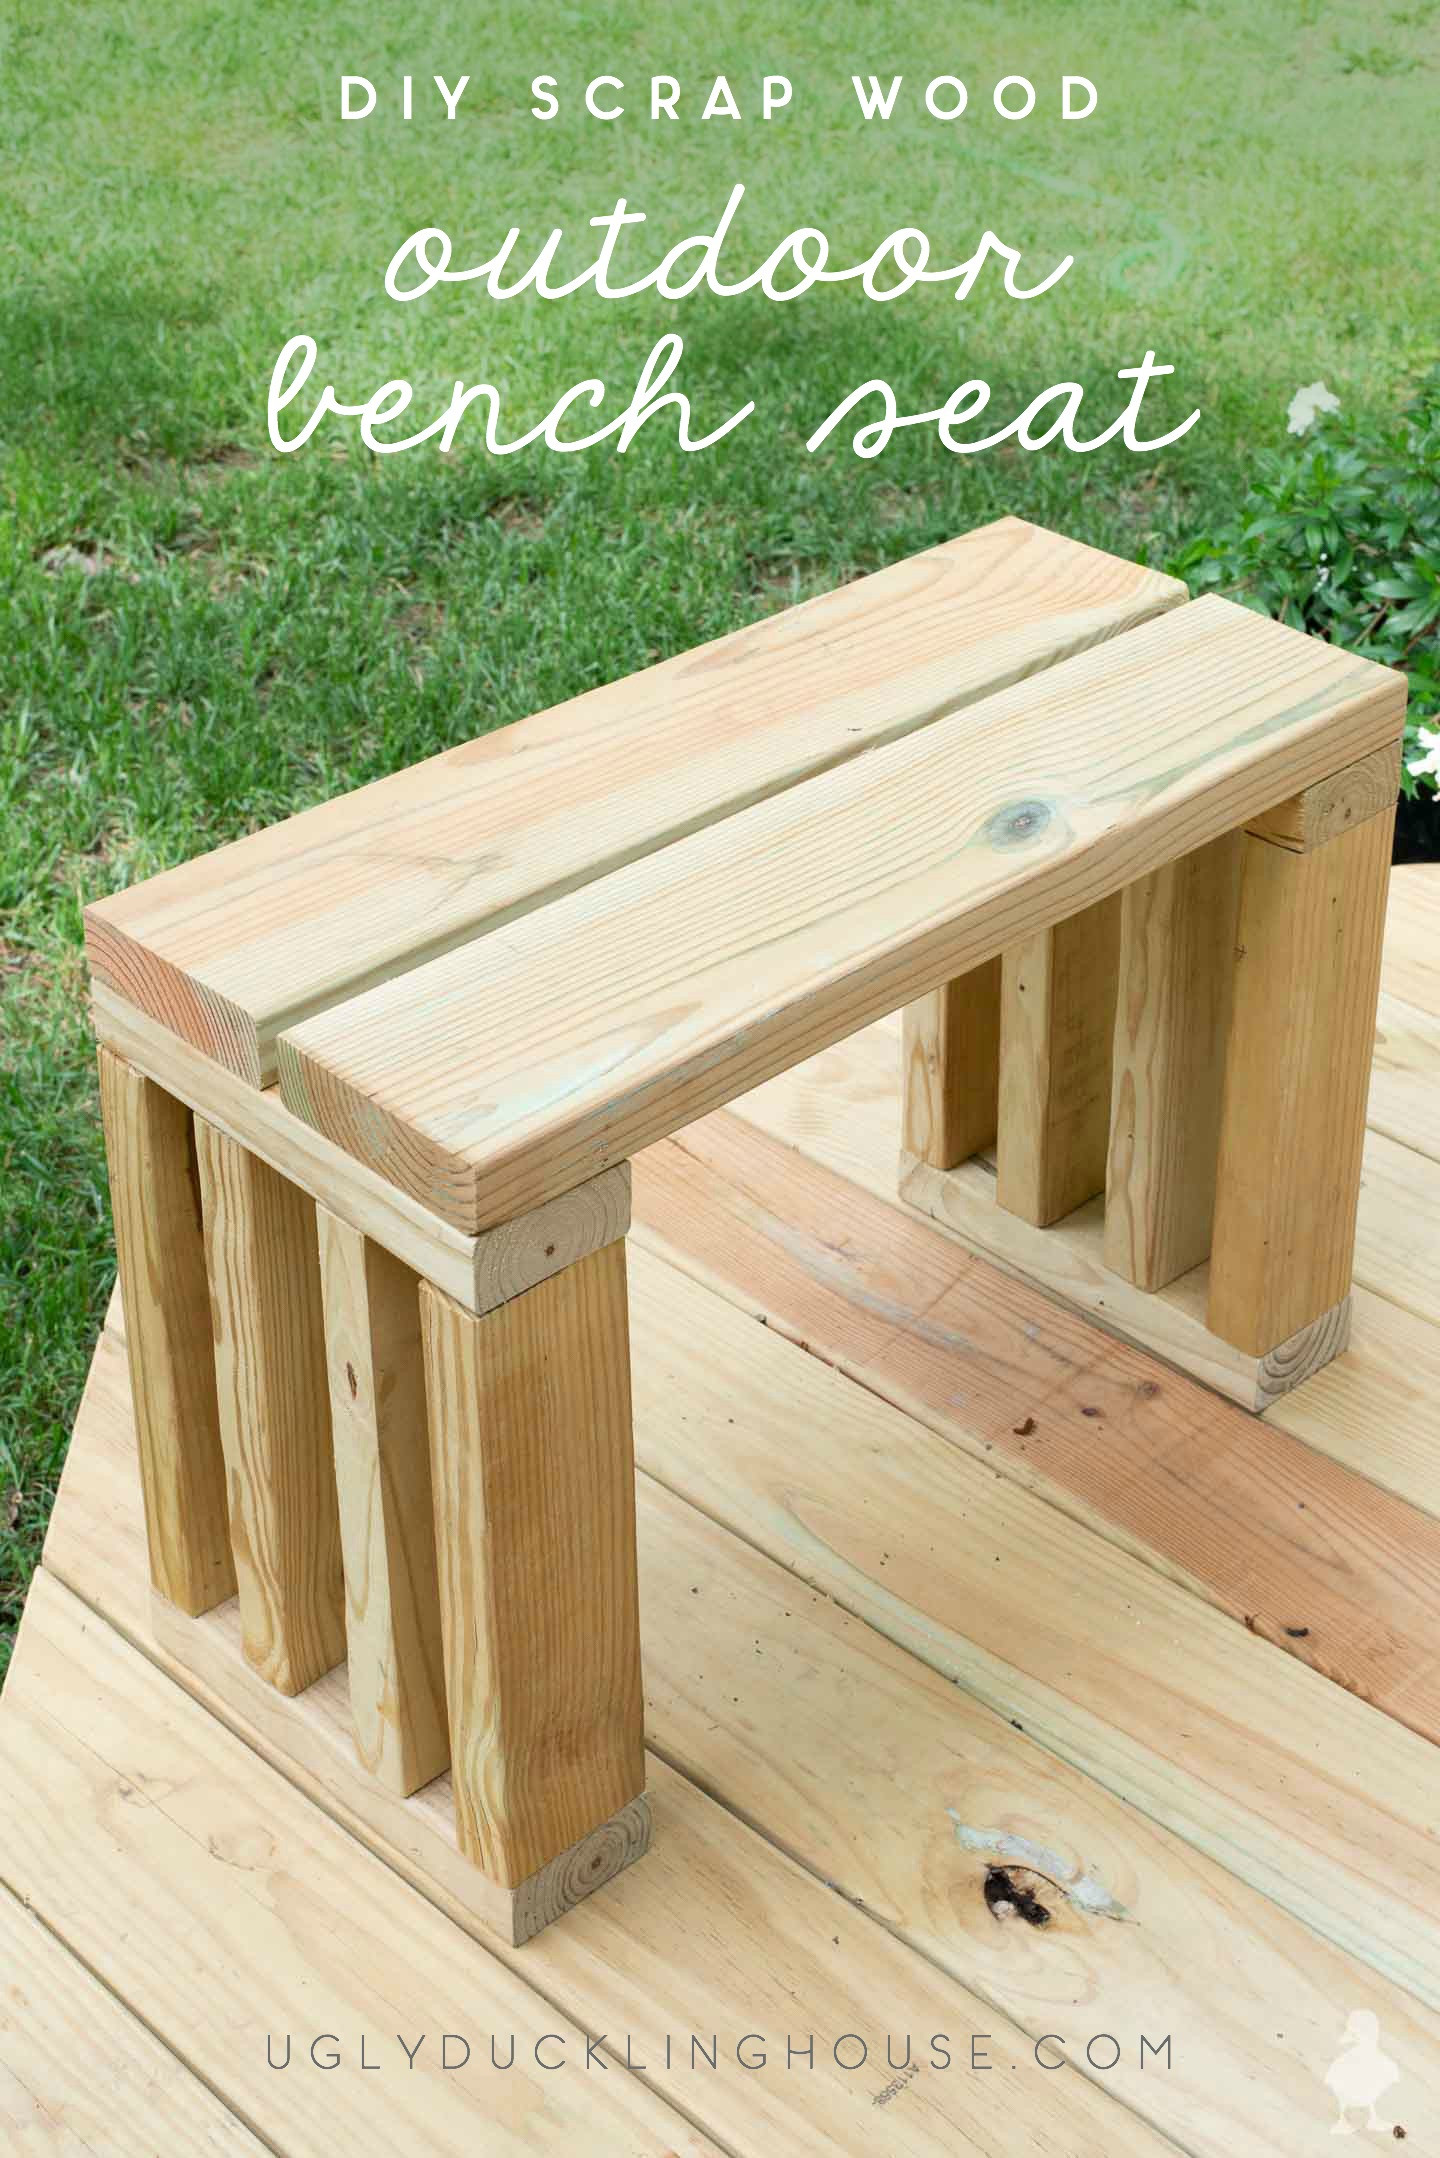 DIY Outdoor Wood Bench
 Scrap Wood Outdoor Bench Seat